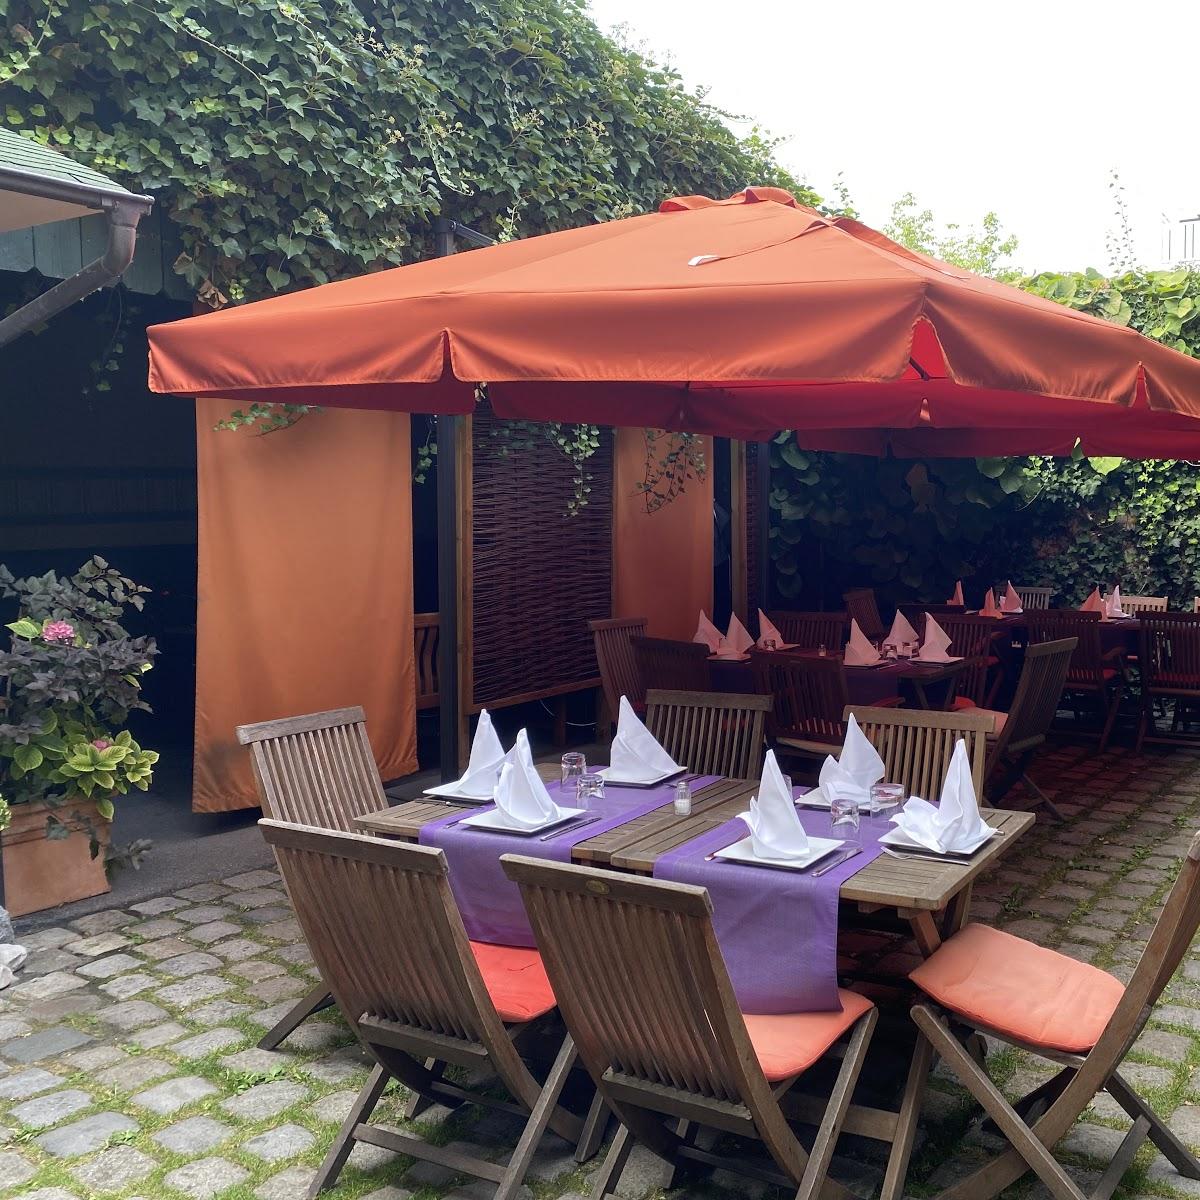 Restaurant "Ristorante Tre Scalini" in München